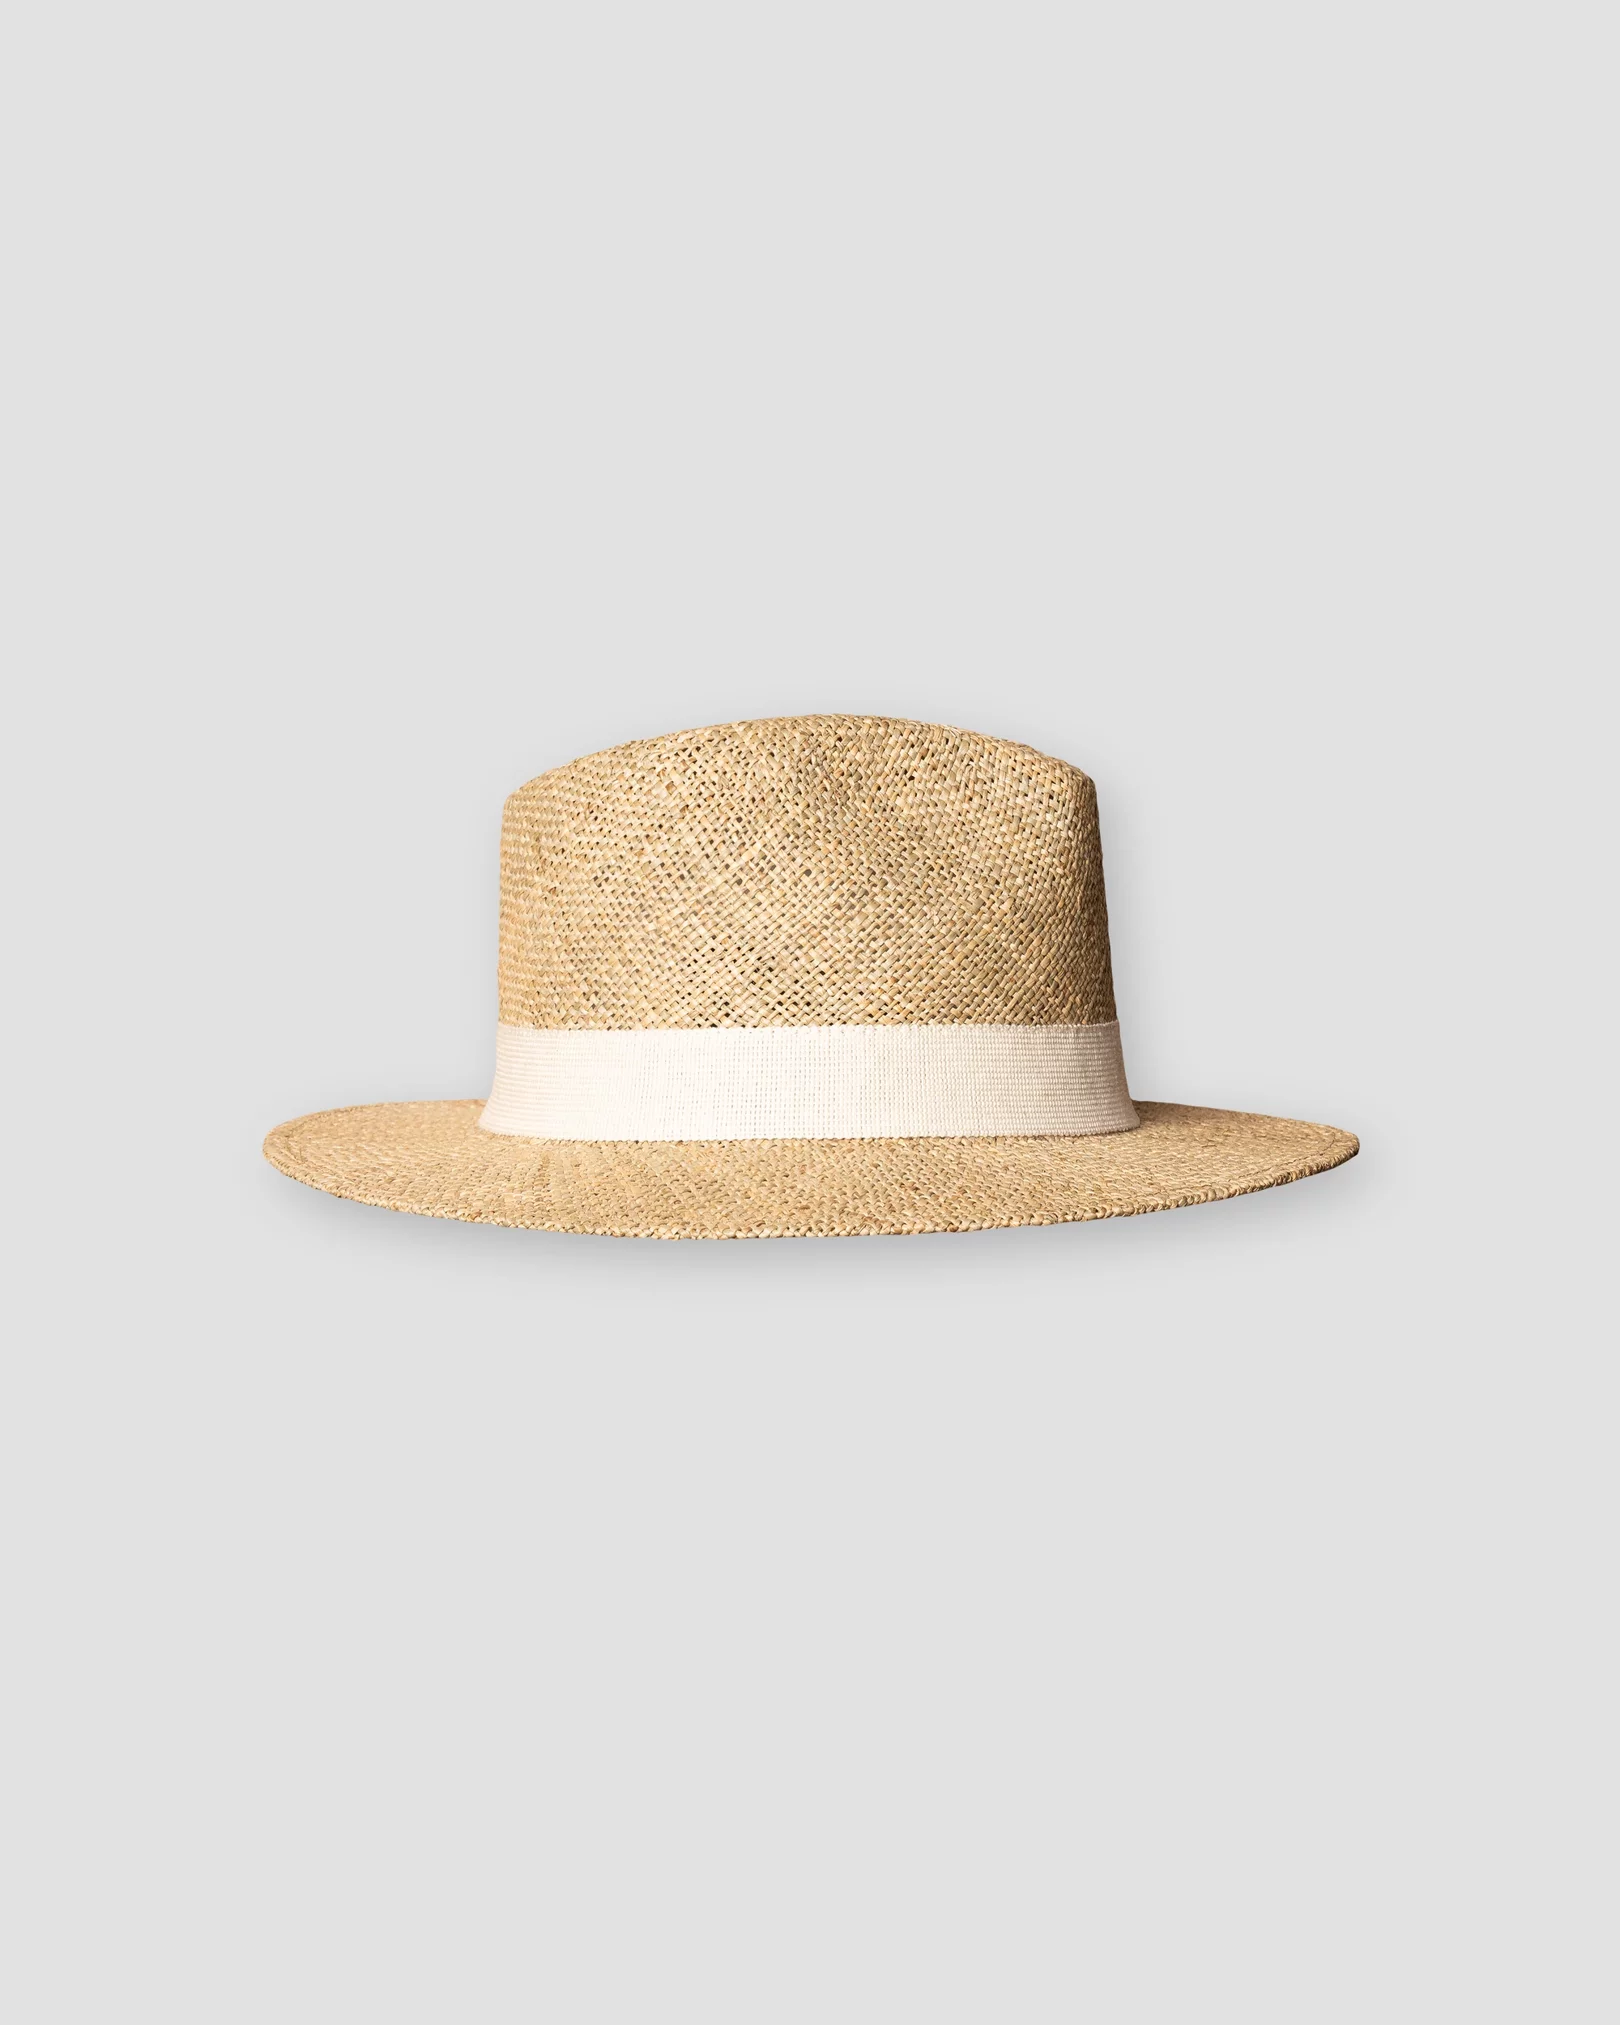 Eton - off white panama hat